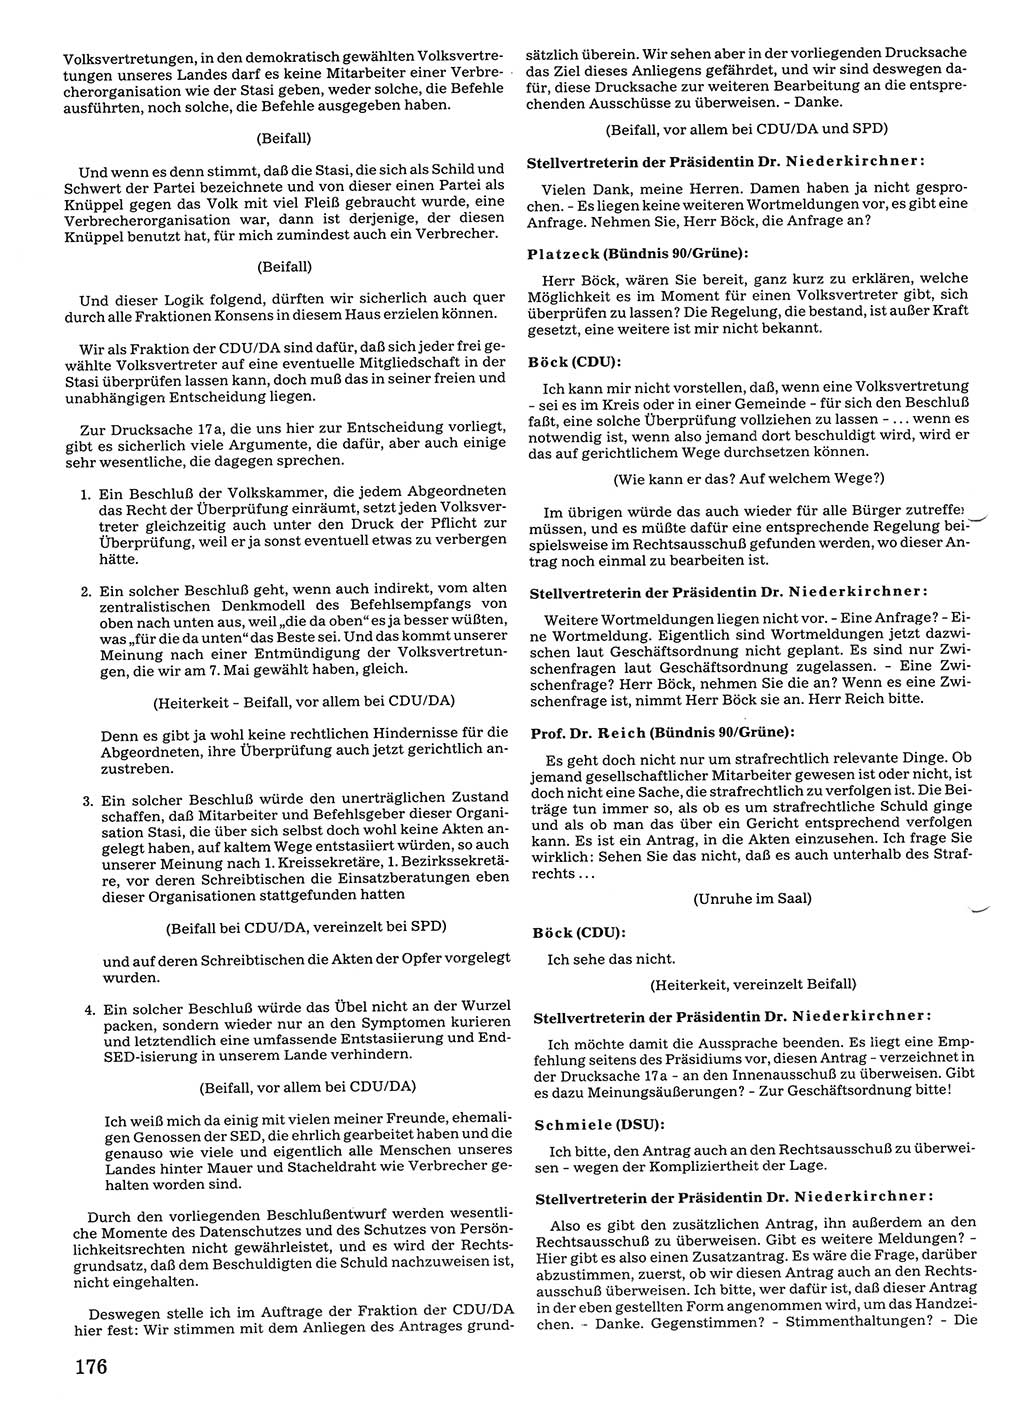 Tagungen der Volkskammer (VK) der Deutschen Demokratischen Republik (DDR), 10. Wahlperiode 1990, Seite 176 (VK. DDR 10. WP. 1990, Prot. Tg. 1-38, 5.4.-2.10.1990, S. 176)